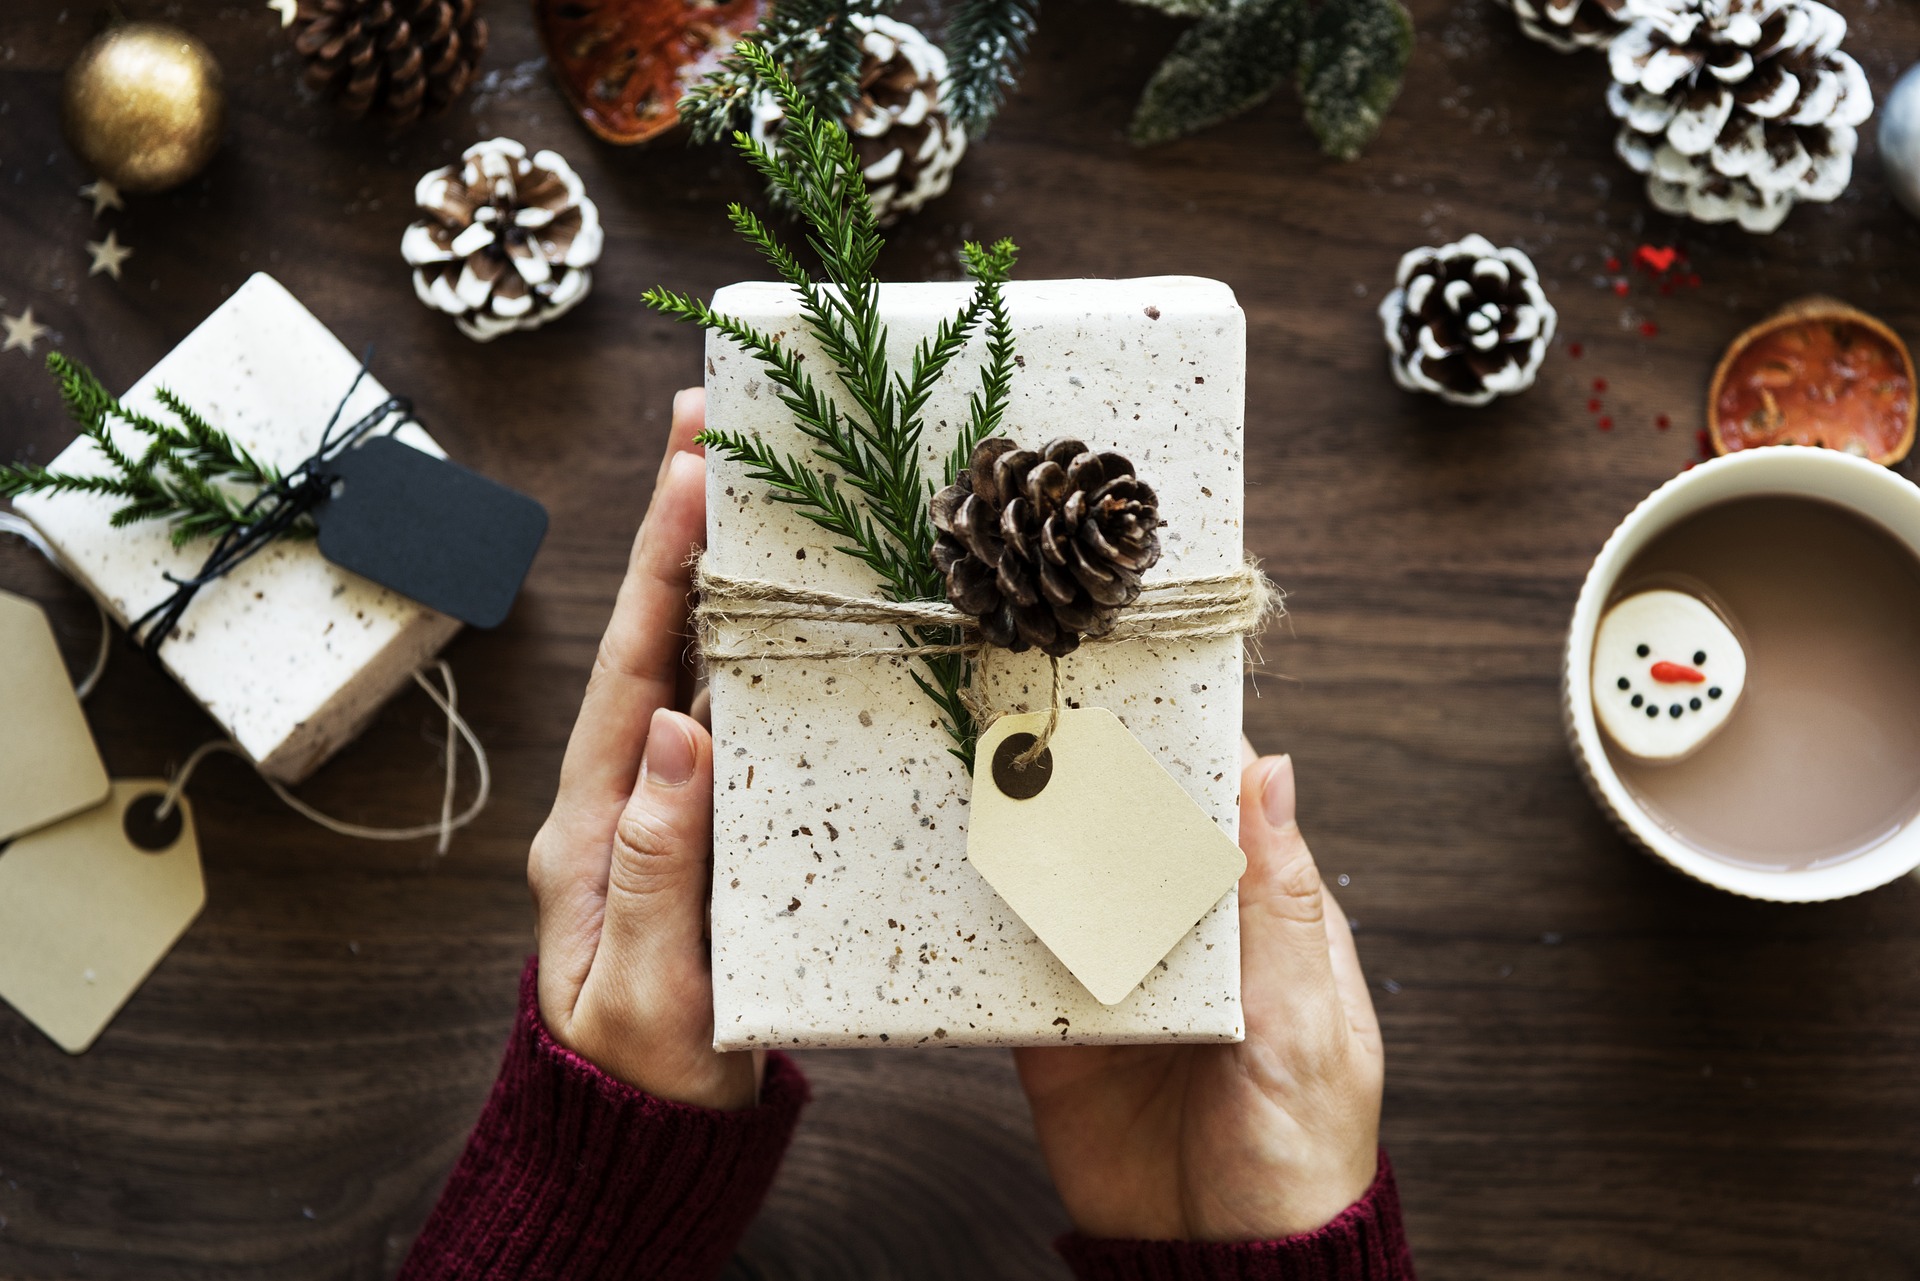 Es weihnachtet und ein sinnvolles Geschenk kann ein Ebook-Reader sein. Bildquelle: Pixabay.de